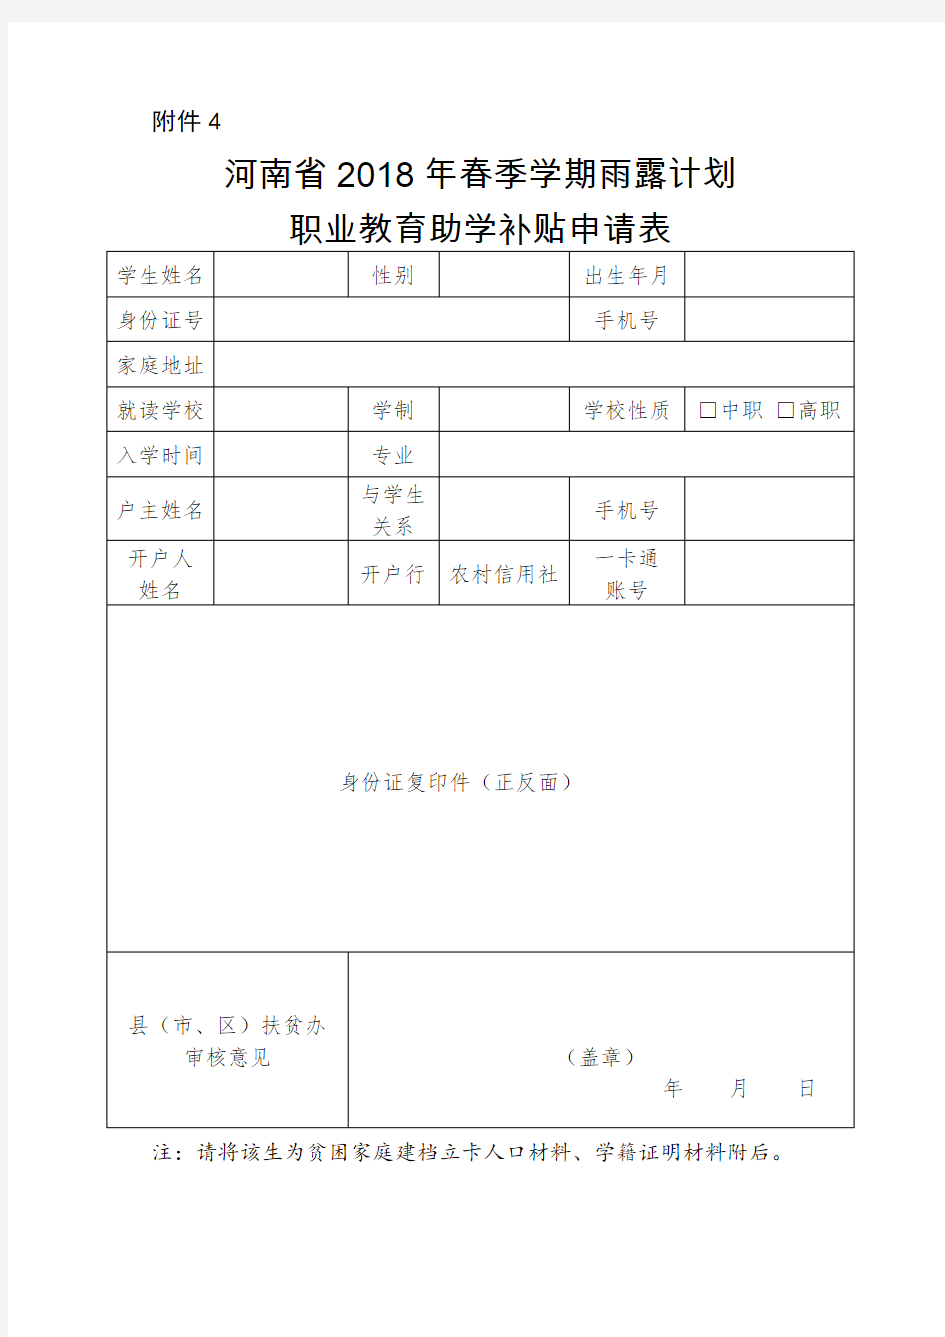 河南省2018年春季学期雨露计划职业教育助学补贴申请表